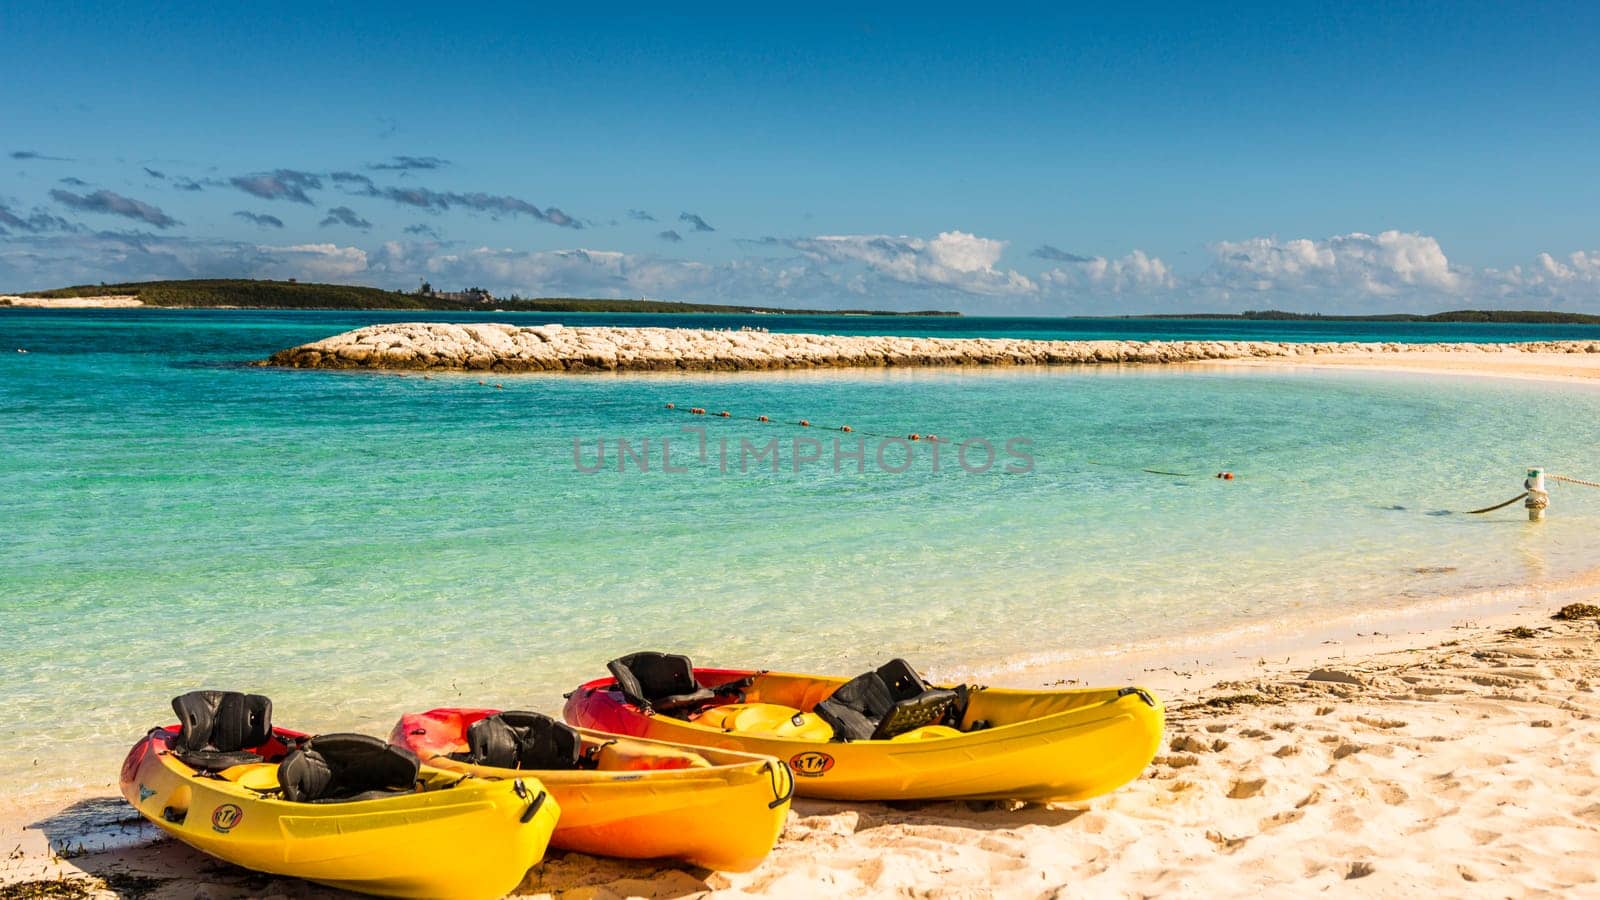 Bahamas Coco Cay Caribbean Island - Luxury beach oasis